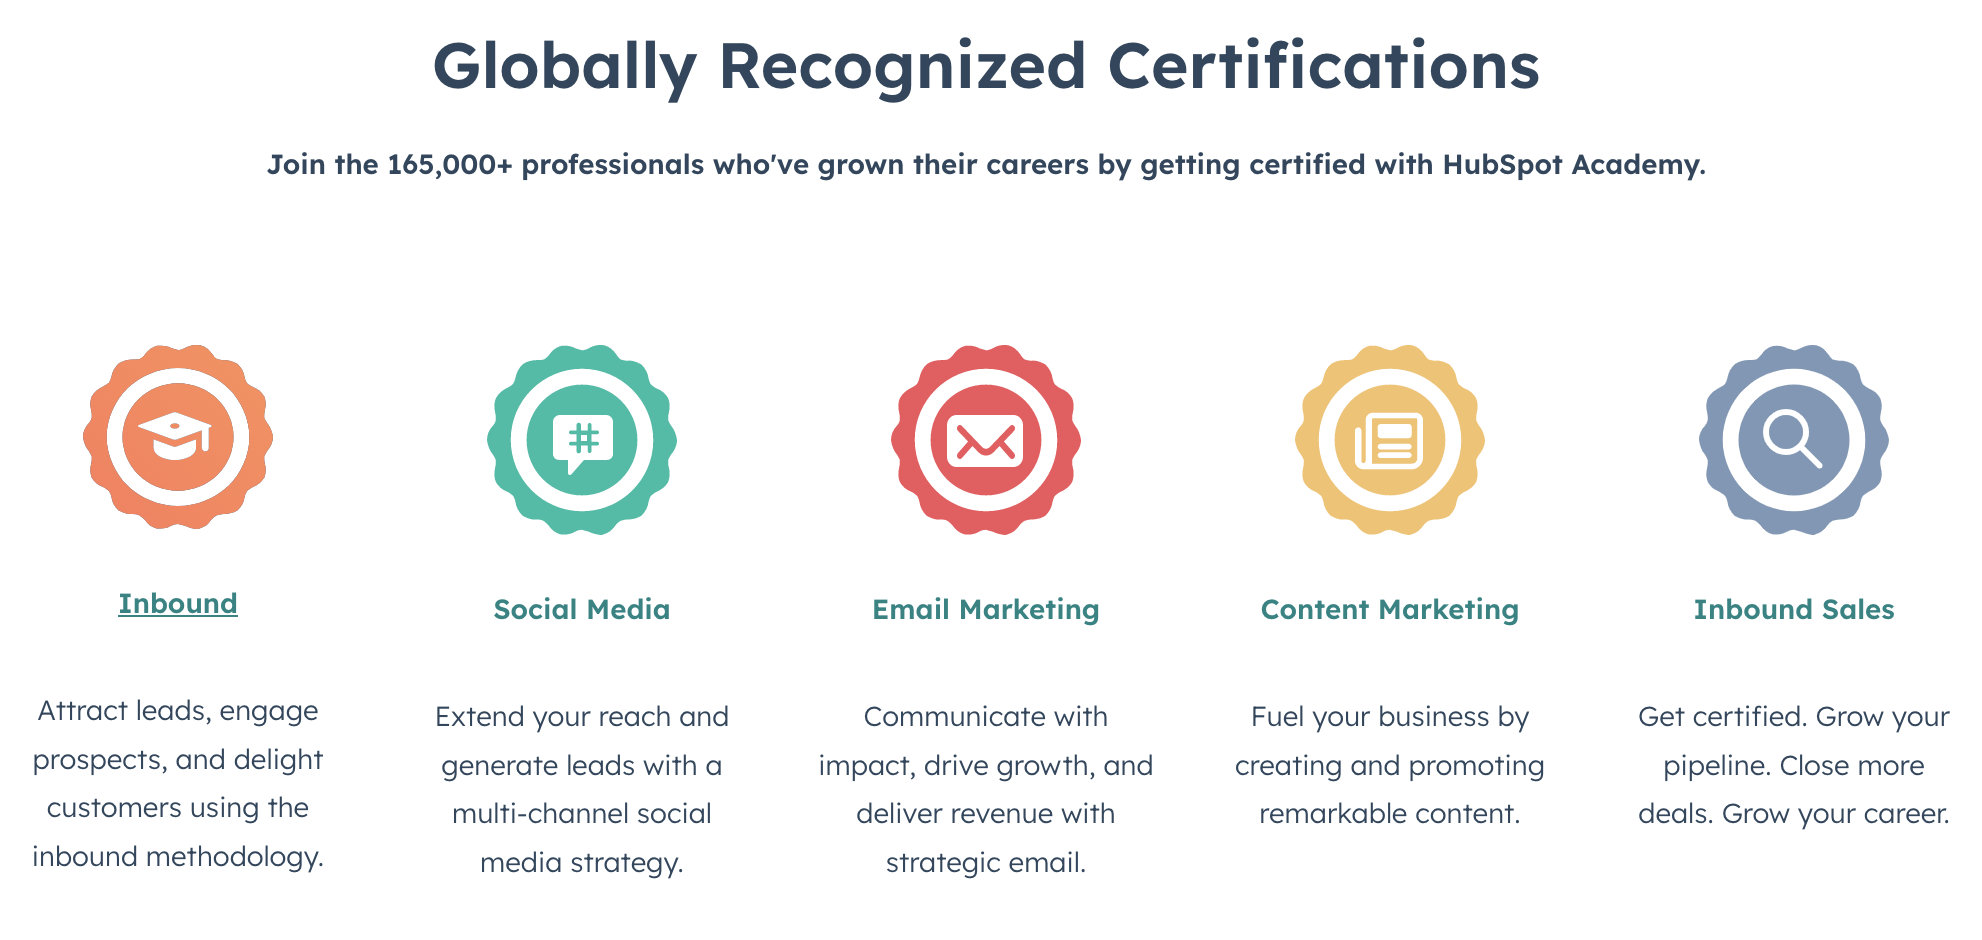 HubSpot Academy Certifications